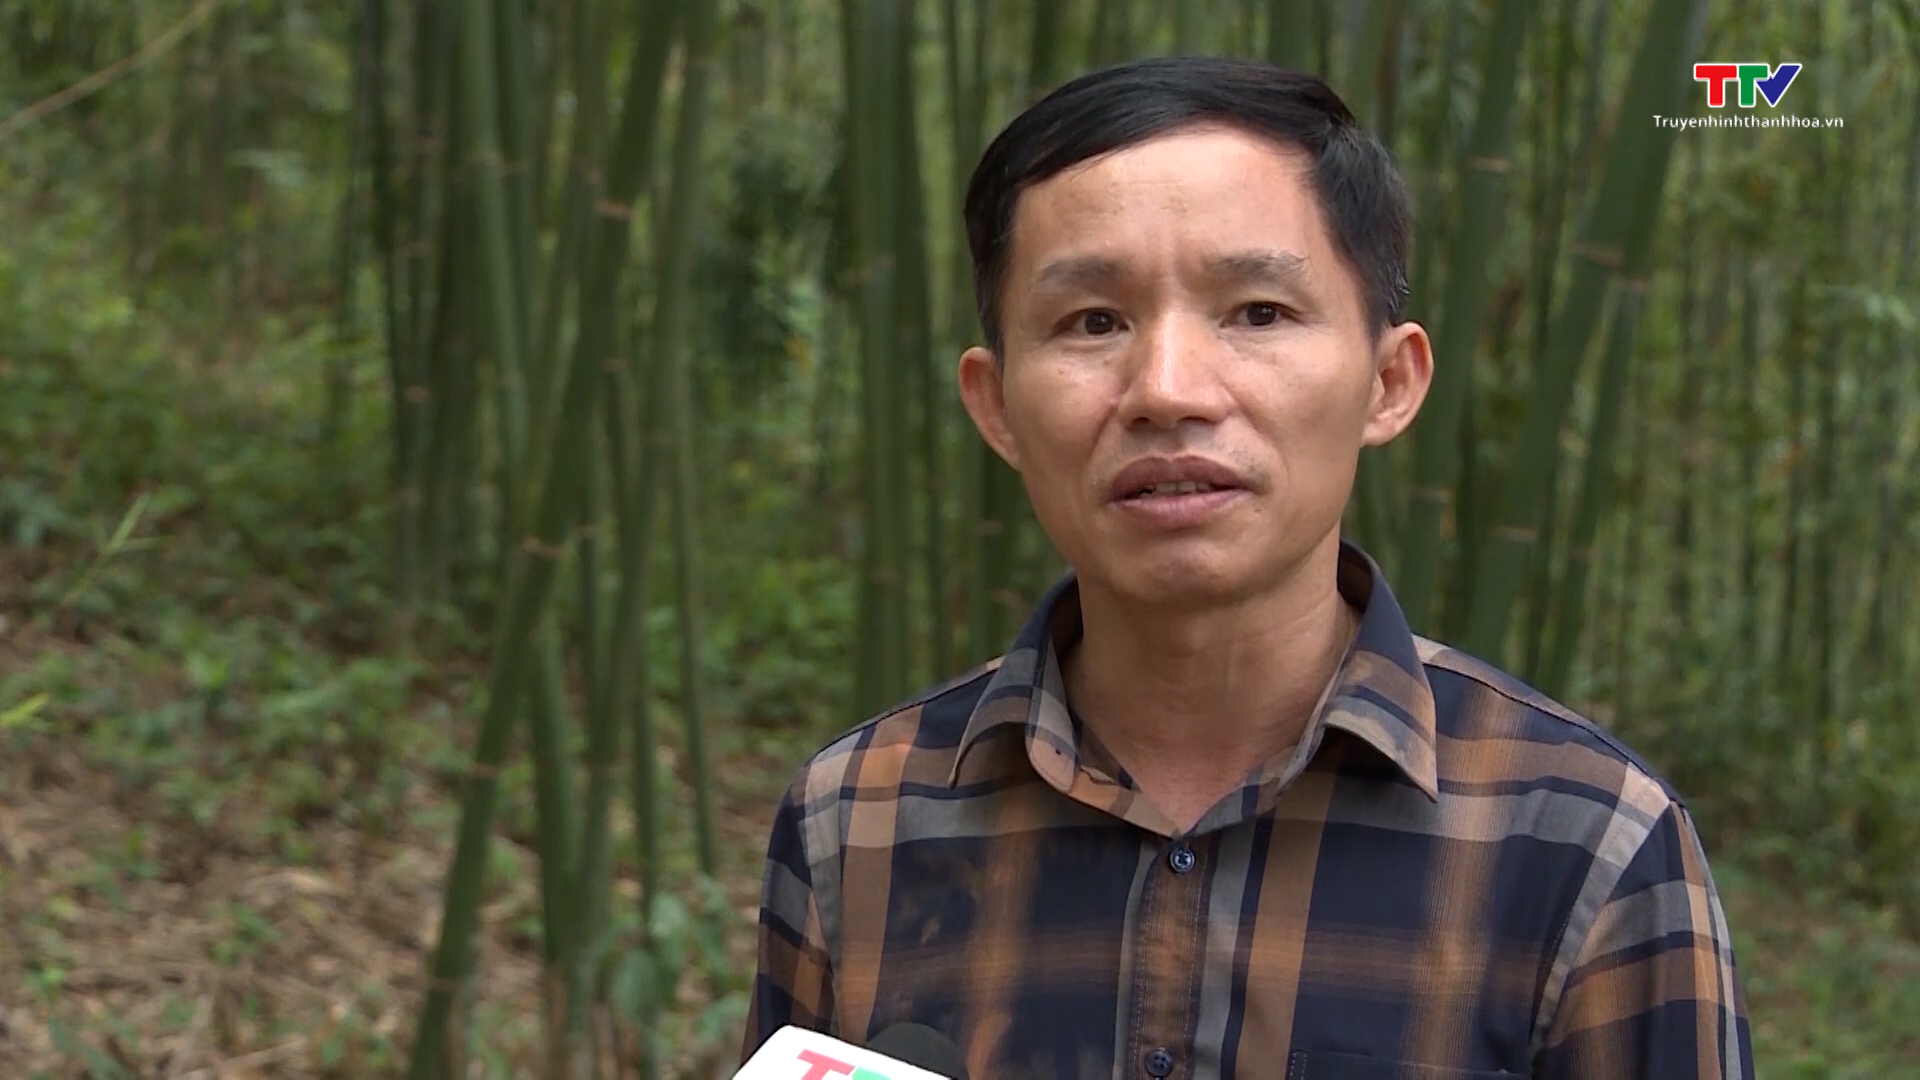 Tăng cường công tác tuyên truyền pháp luật bảo vệ rừng ở miền núi Thanh Hóa - Ảnh 4.